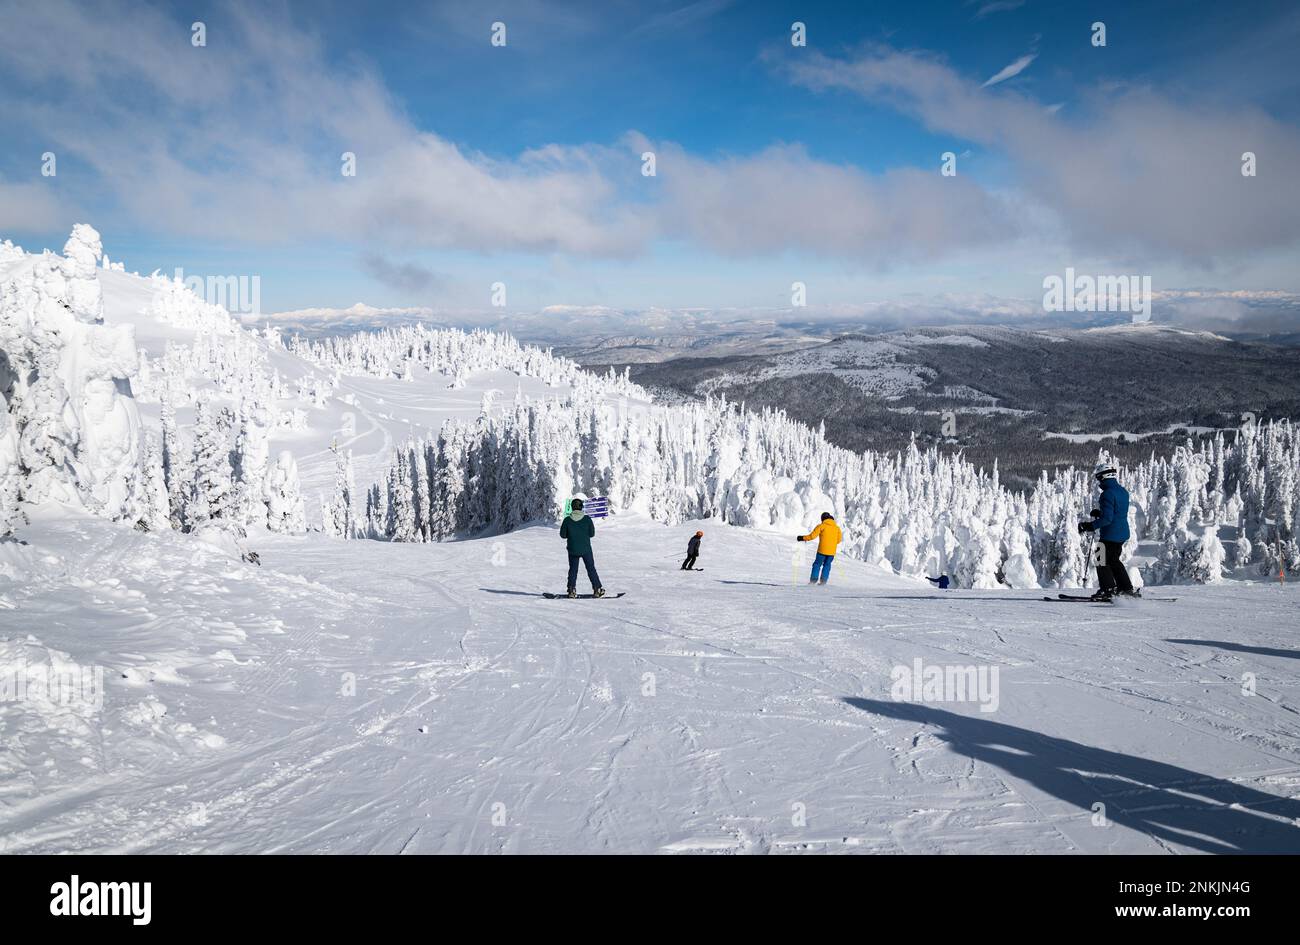 Gli sciatori e gli snowboarder iniziano a scendere lungo la montagna dallo skilift Crystal, presso la vetta del "Top of the World", presso la stazione sciistica di Sun Peaks. Foto Stock